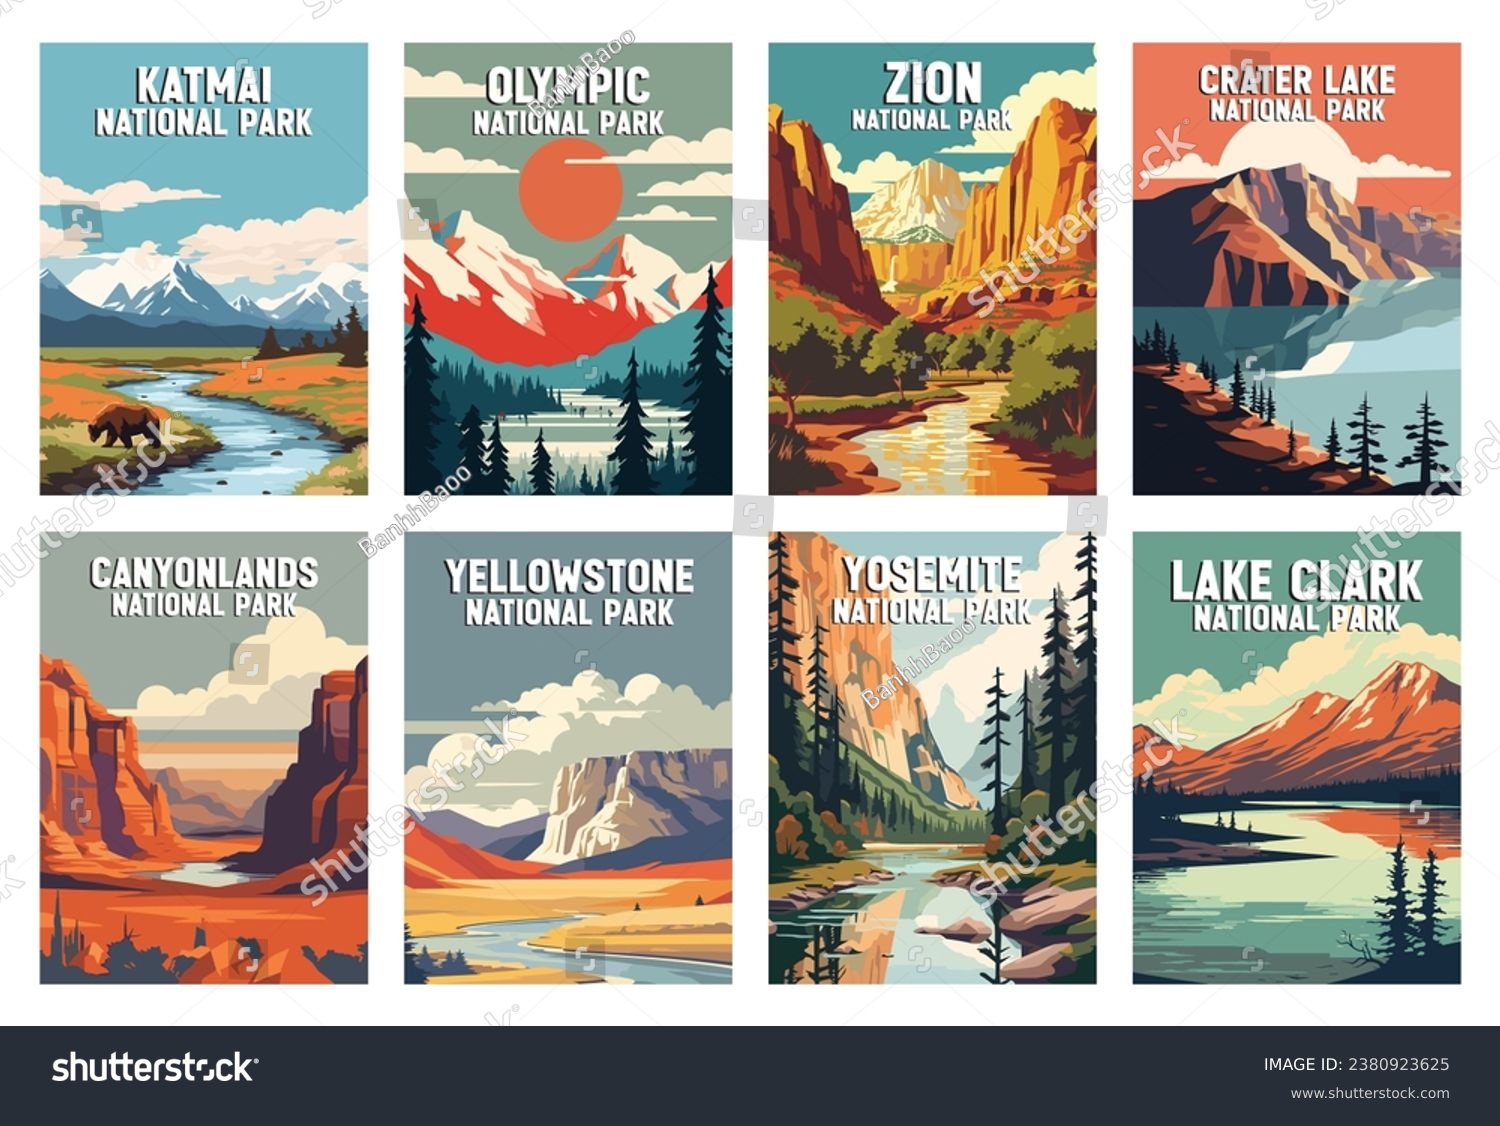 Set of National Parks Illustration Art. Katmai, Crater Lake, Yosemite, Zion, Yellowstone, Zion, Olympic, Lake Clark. #2380923625